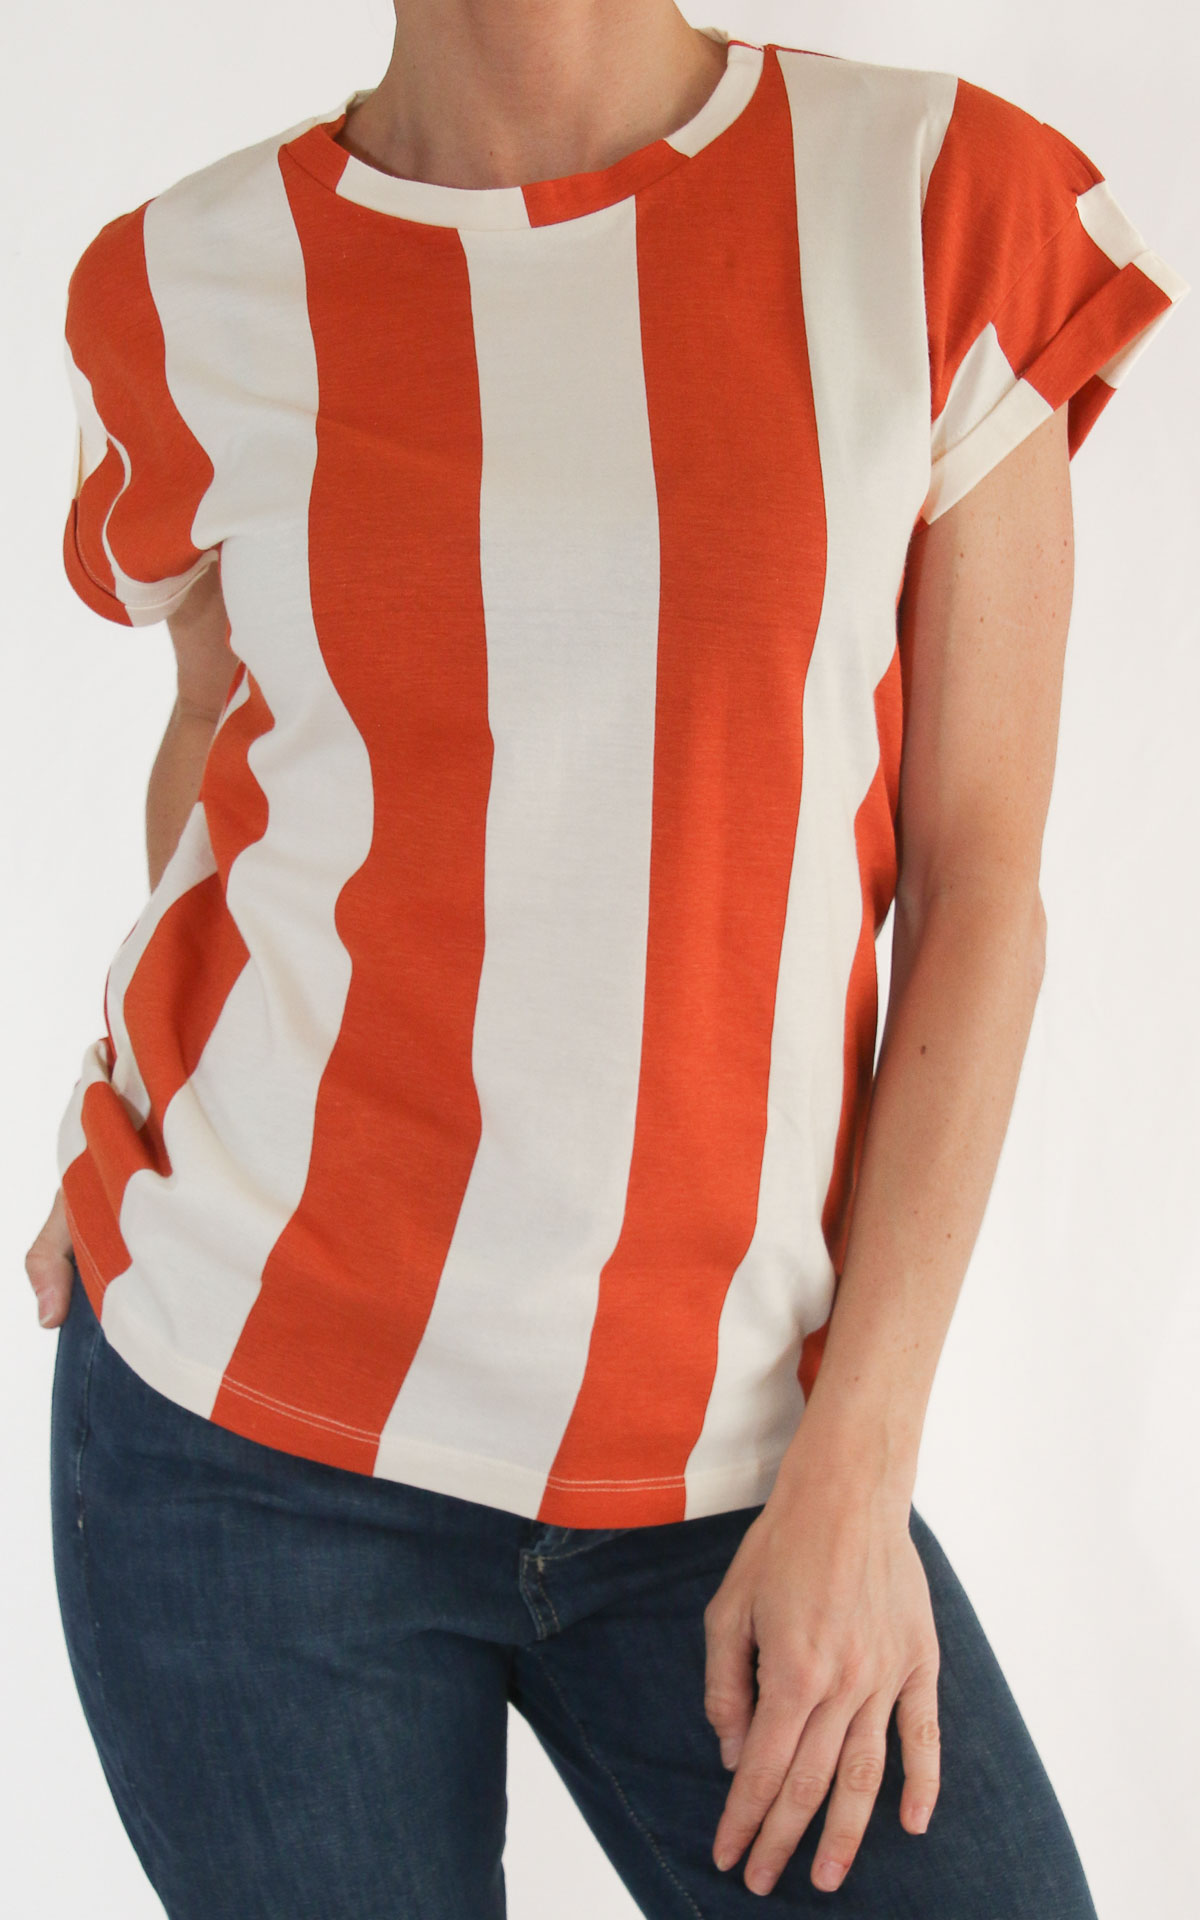 Compania fantastica - t-shirt riga verticale bicolore - Burro/arancio